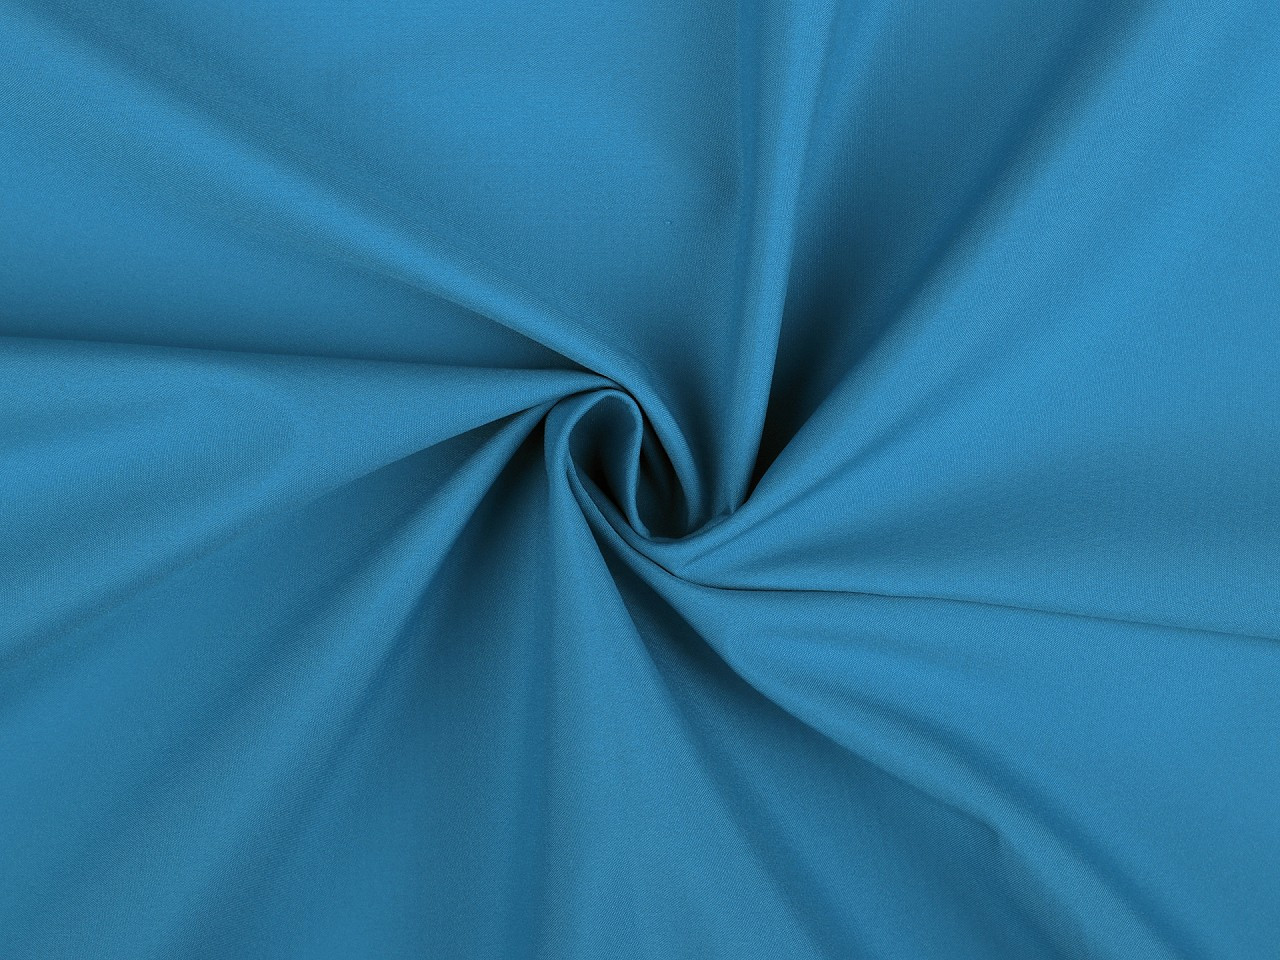 Letní softshell, barva 12 (542) modrá tyrkys